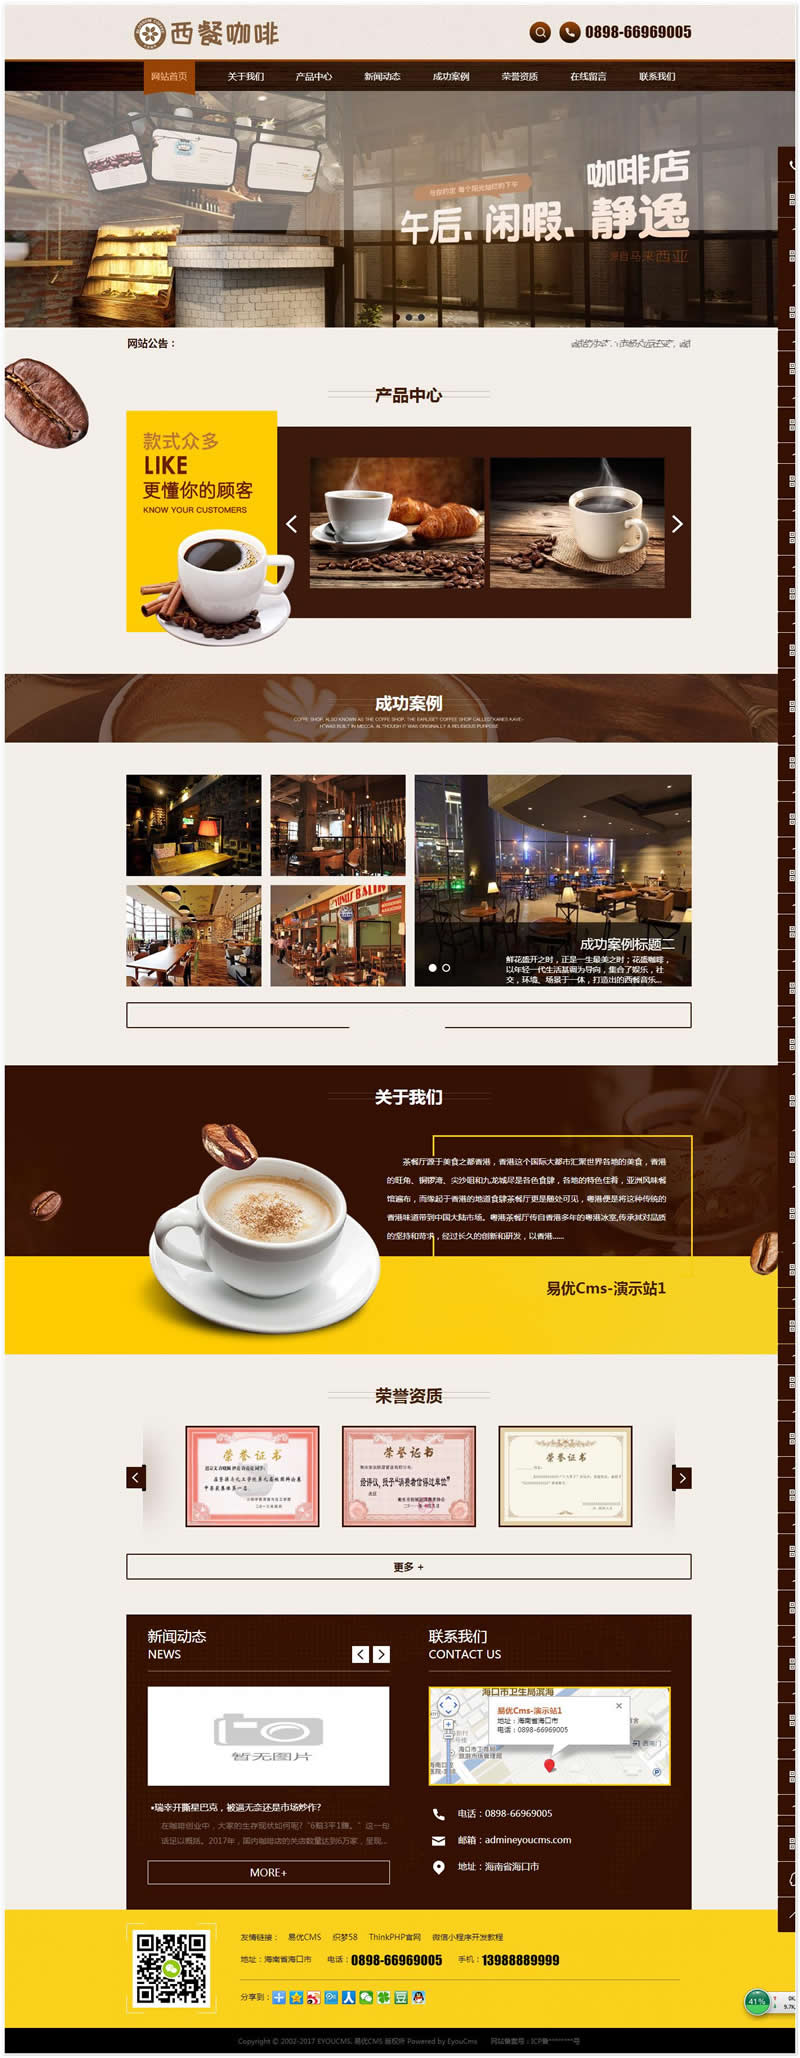 【首发】成都咖啡网站管理系统 v1.7 bulid0806